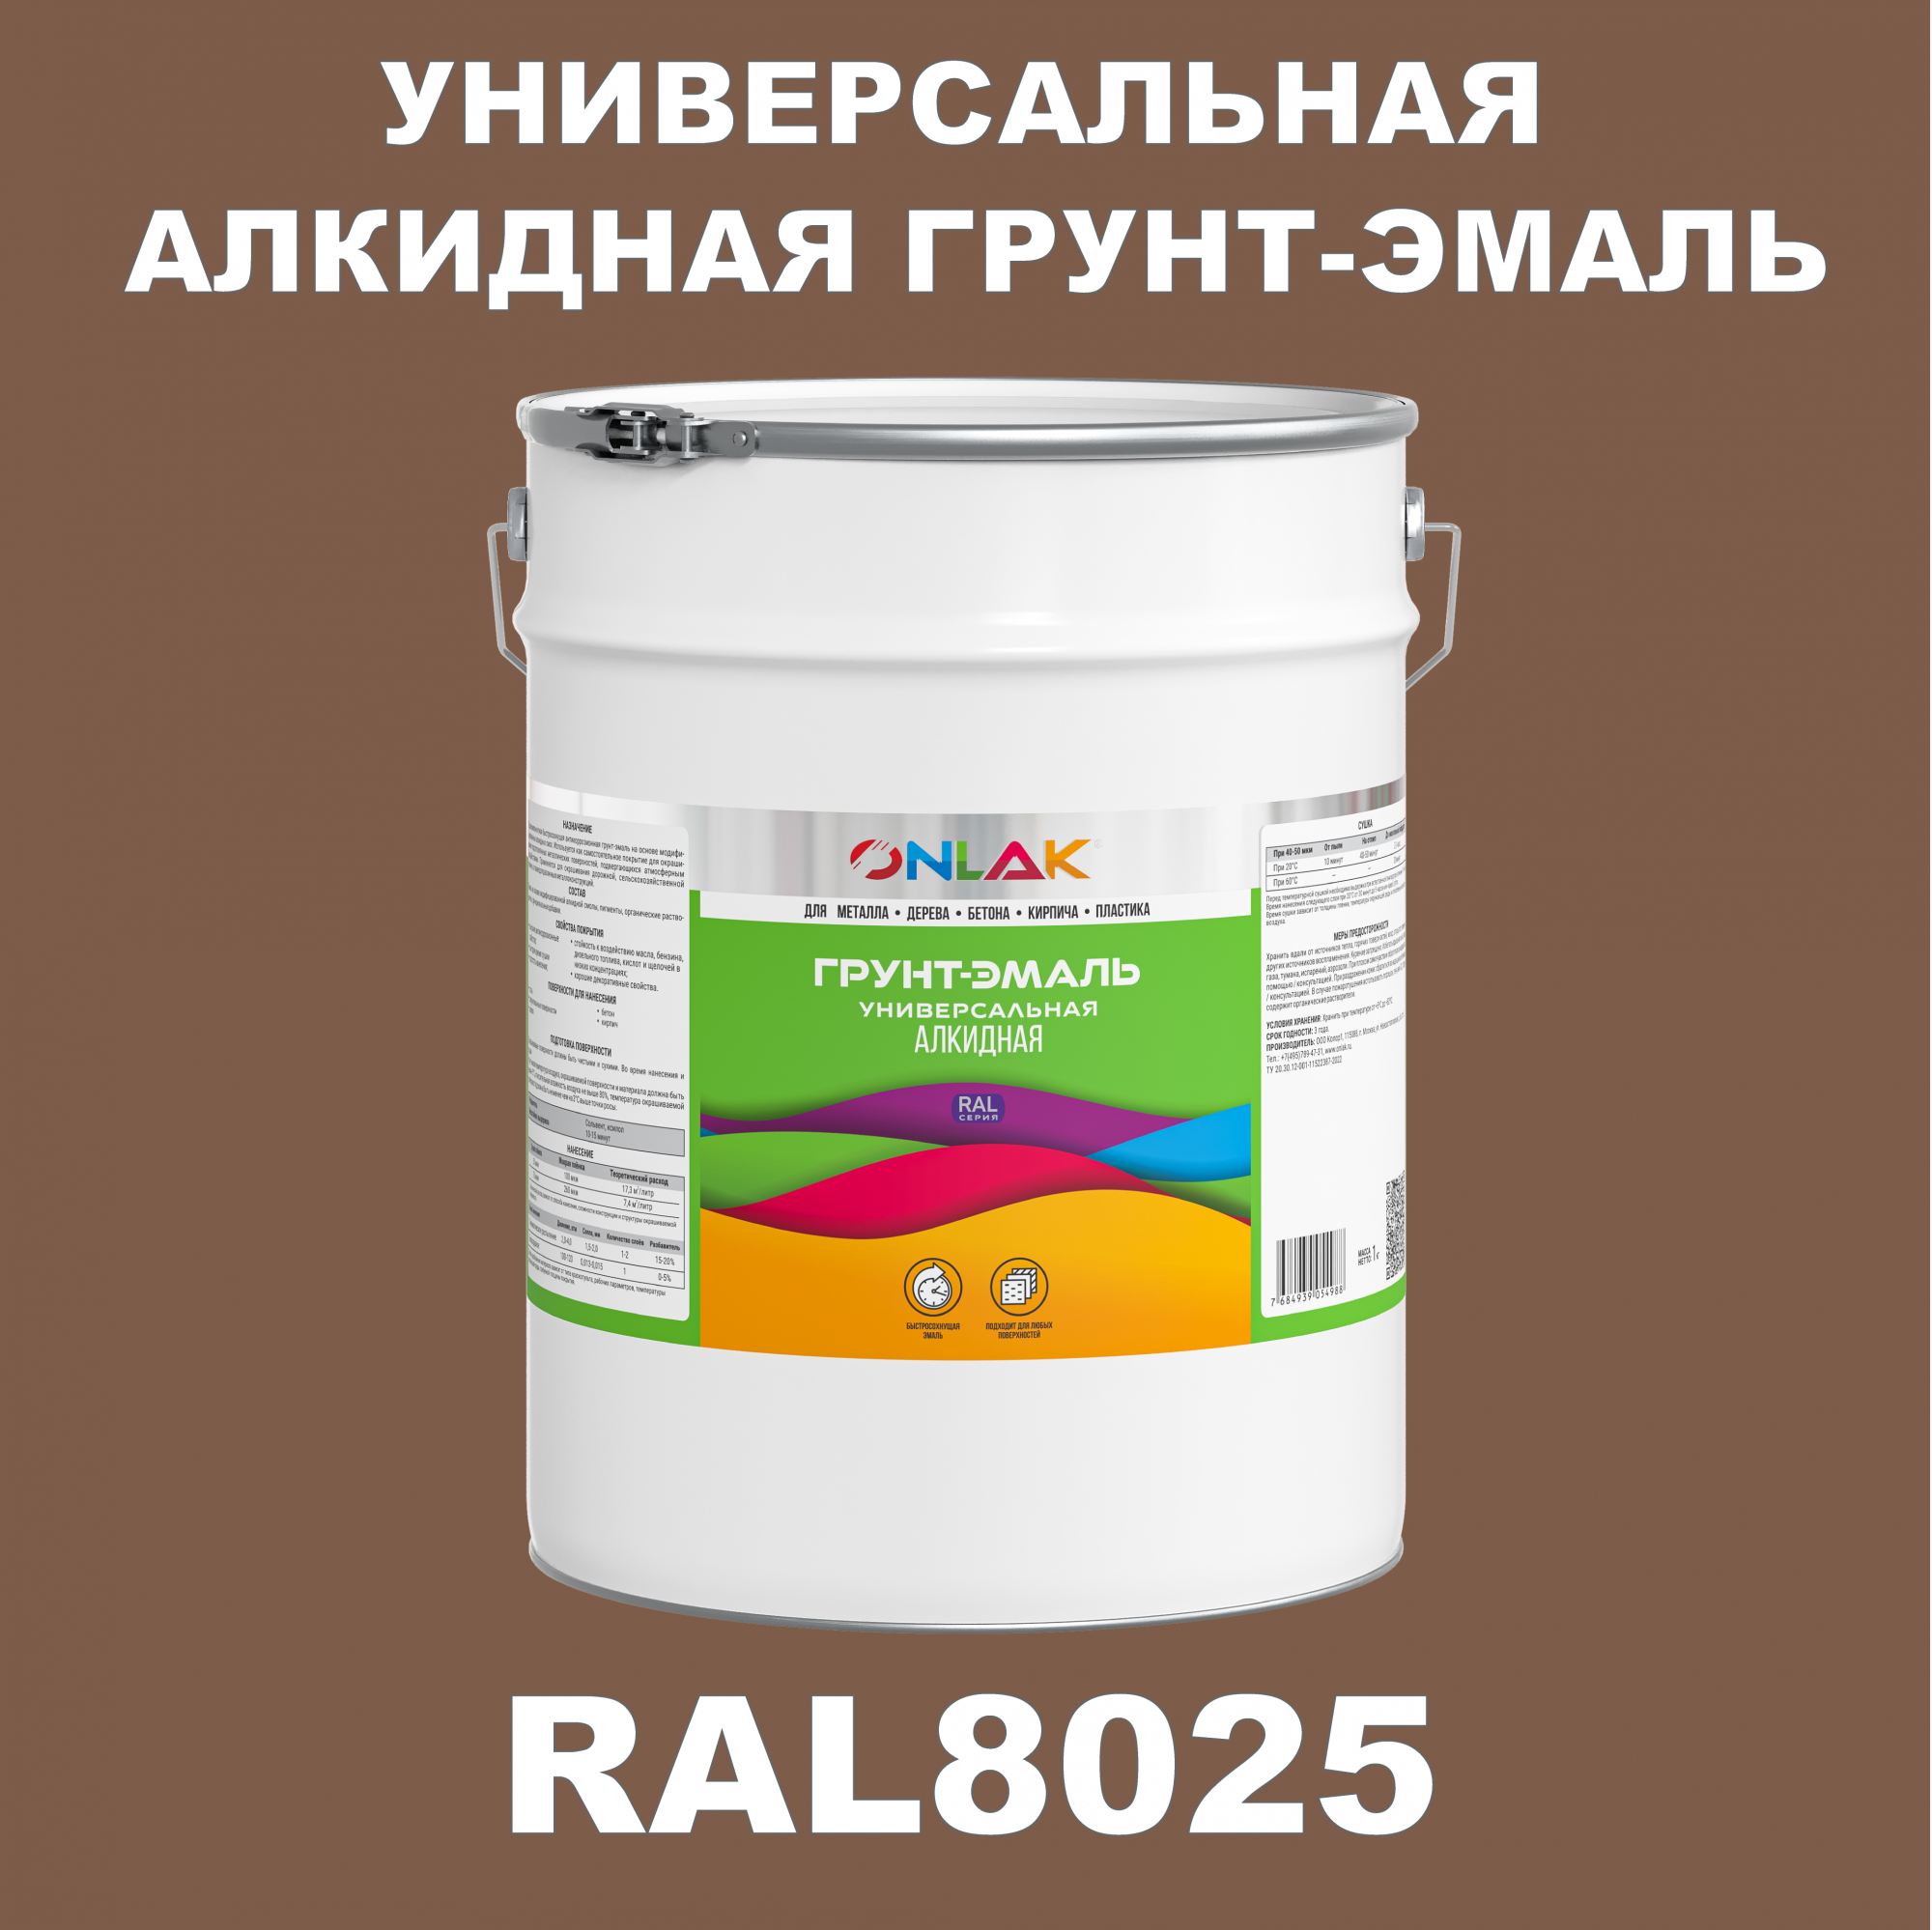 Грунт-эмаль ONLAK 1К RAL8025 антикоррозионная алкидная по металлу по ржавчине 20 кг грунт эмаль престиж по ржавчине алкидная зеленая 1 9 кг